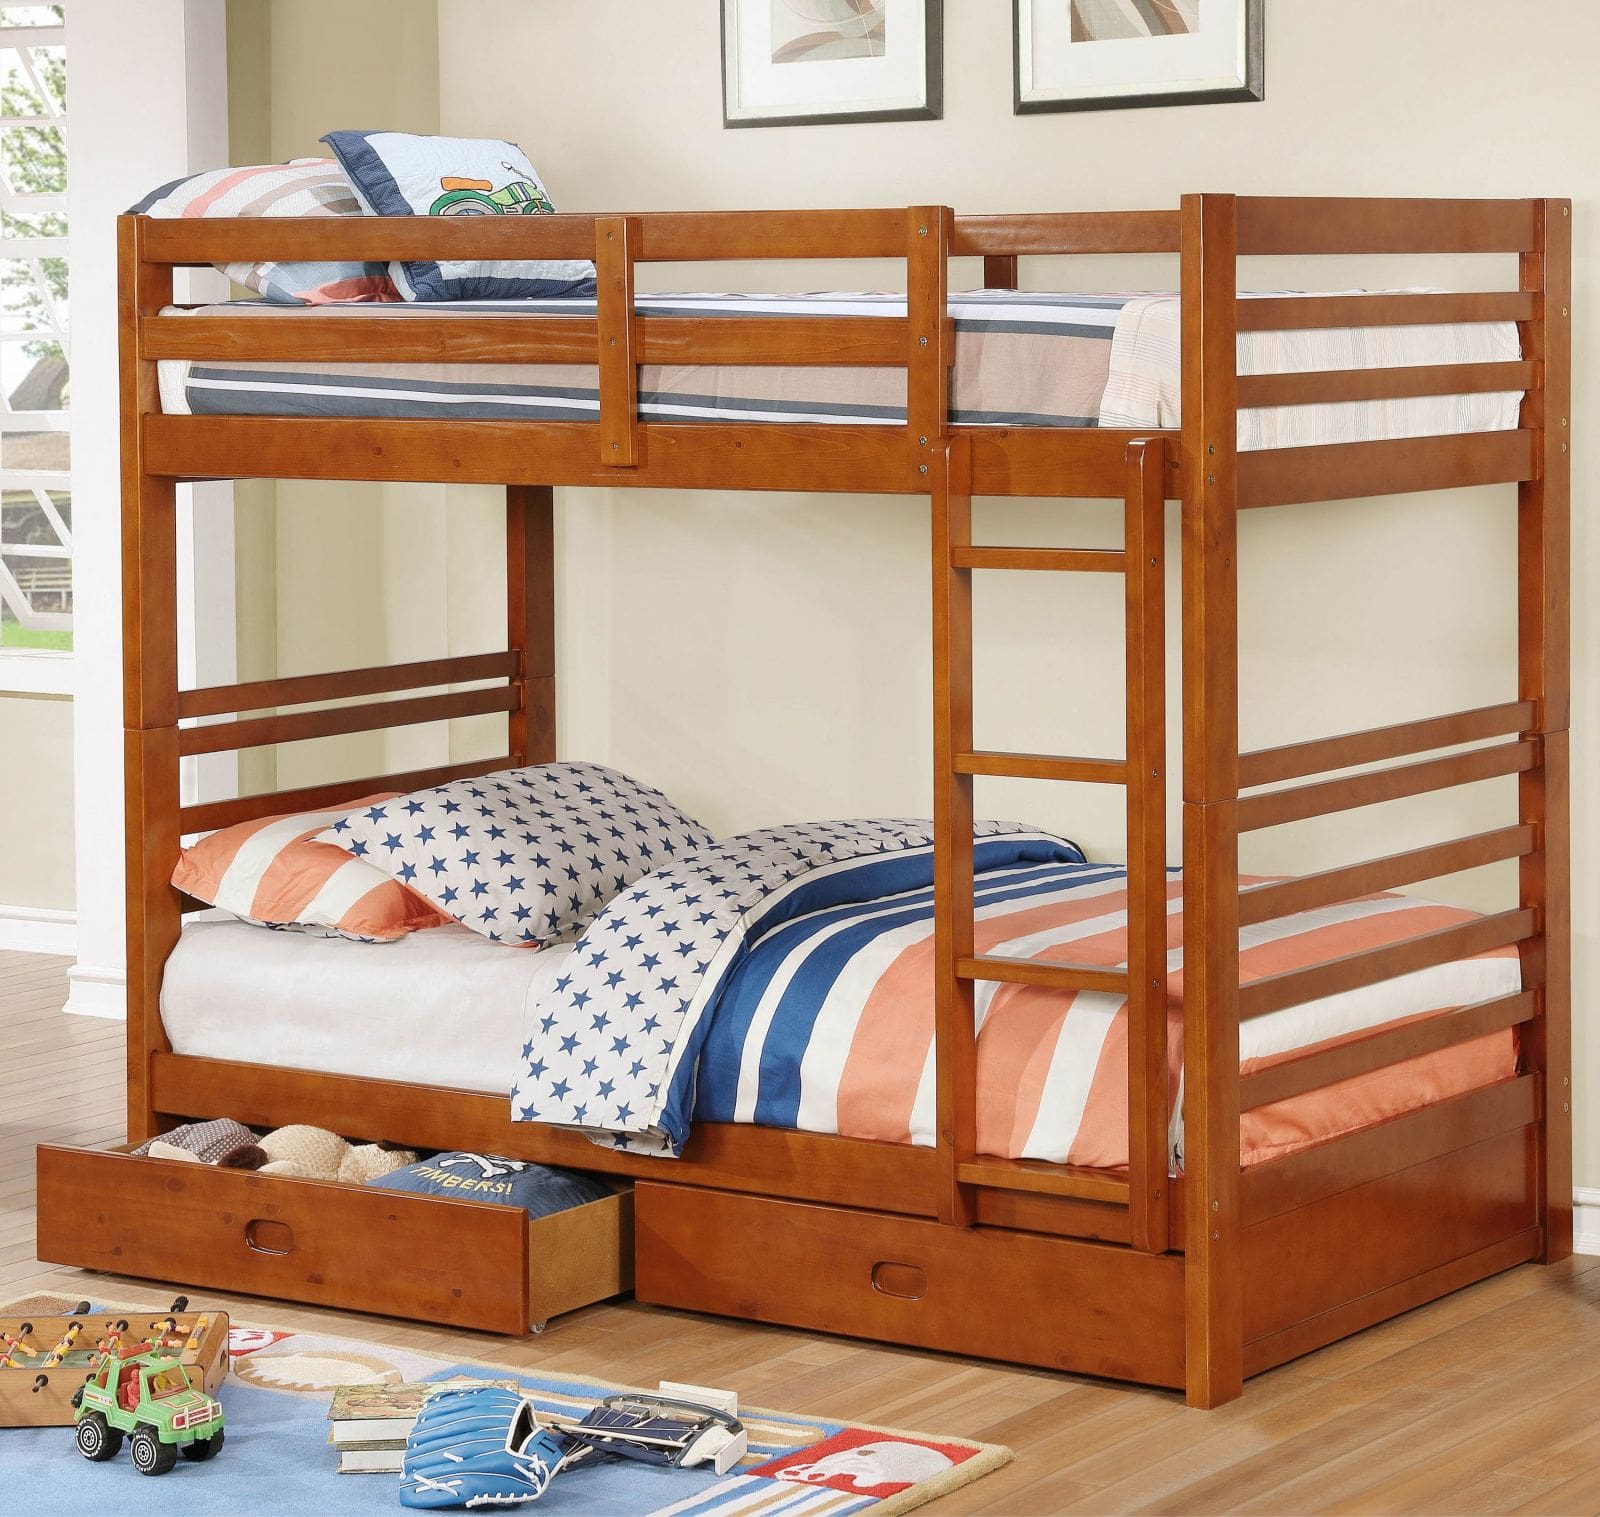 giường tầng gỗ